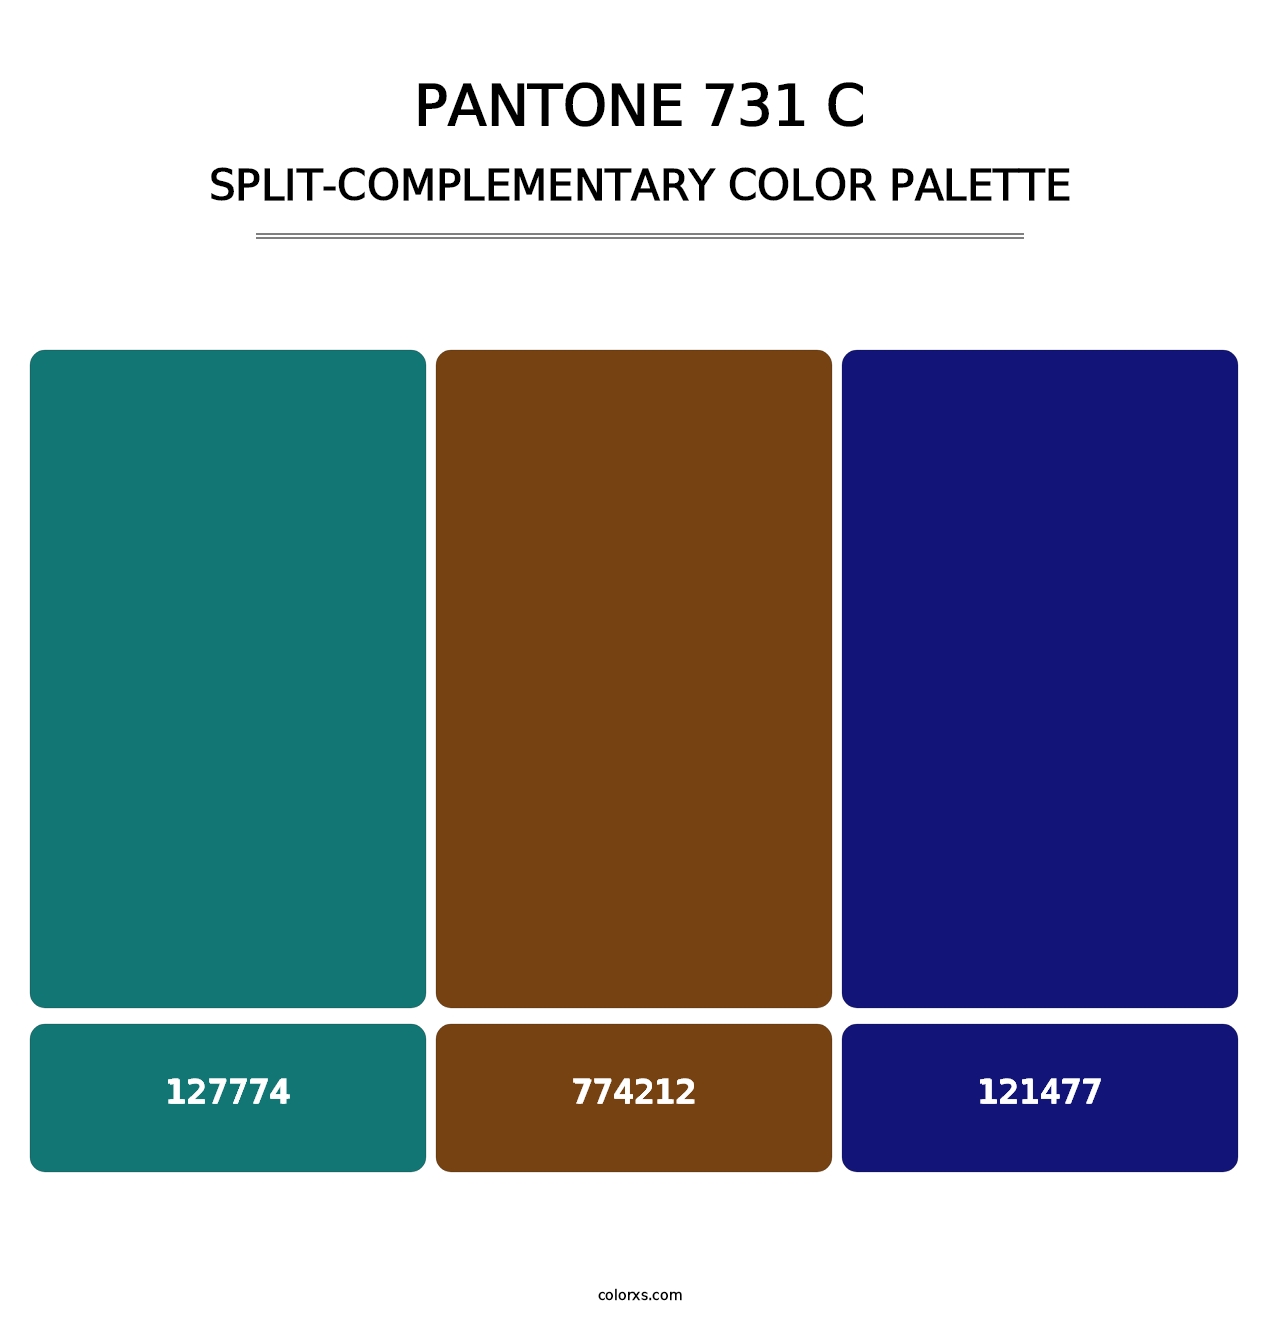 PANTONE 731 C - Split-Complementary Color Palette